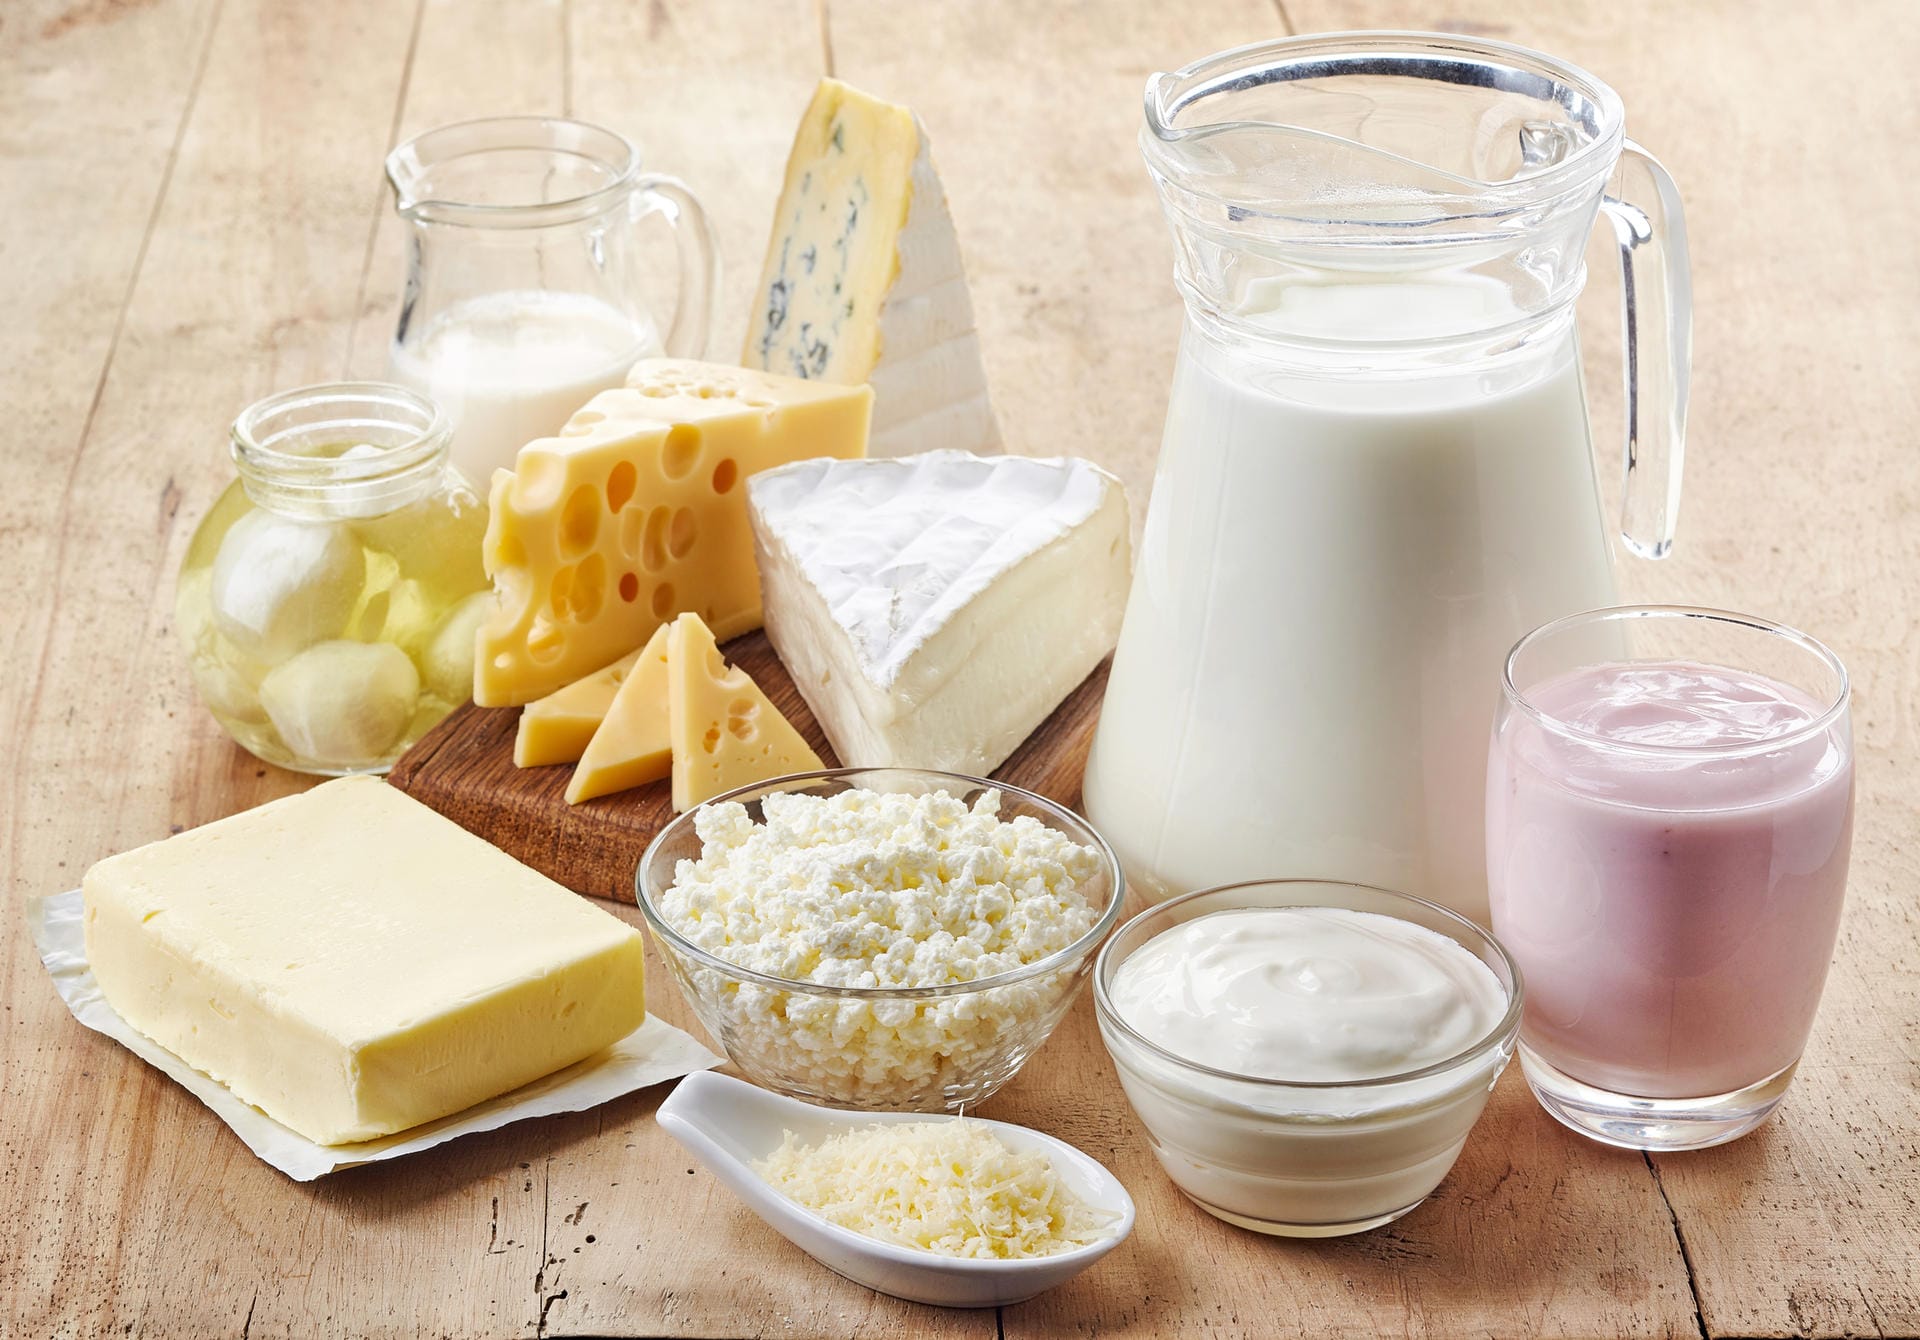 Fettreduzierte Milchprodukte: Auch sie können die Beschwerden mildern. Experten empfehlen, täglich 0,5 Liter fettreduzierte Milch oder andere fettarme Milchprodukte (Käse, Joghurt oder Quark) zu verzehren.